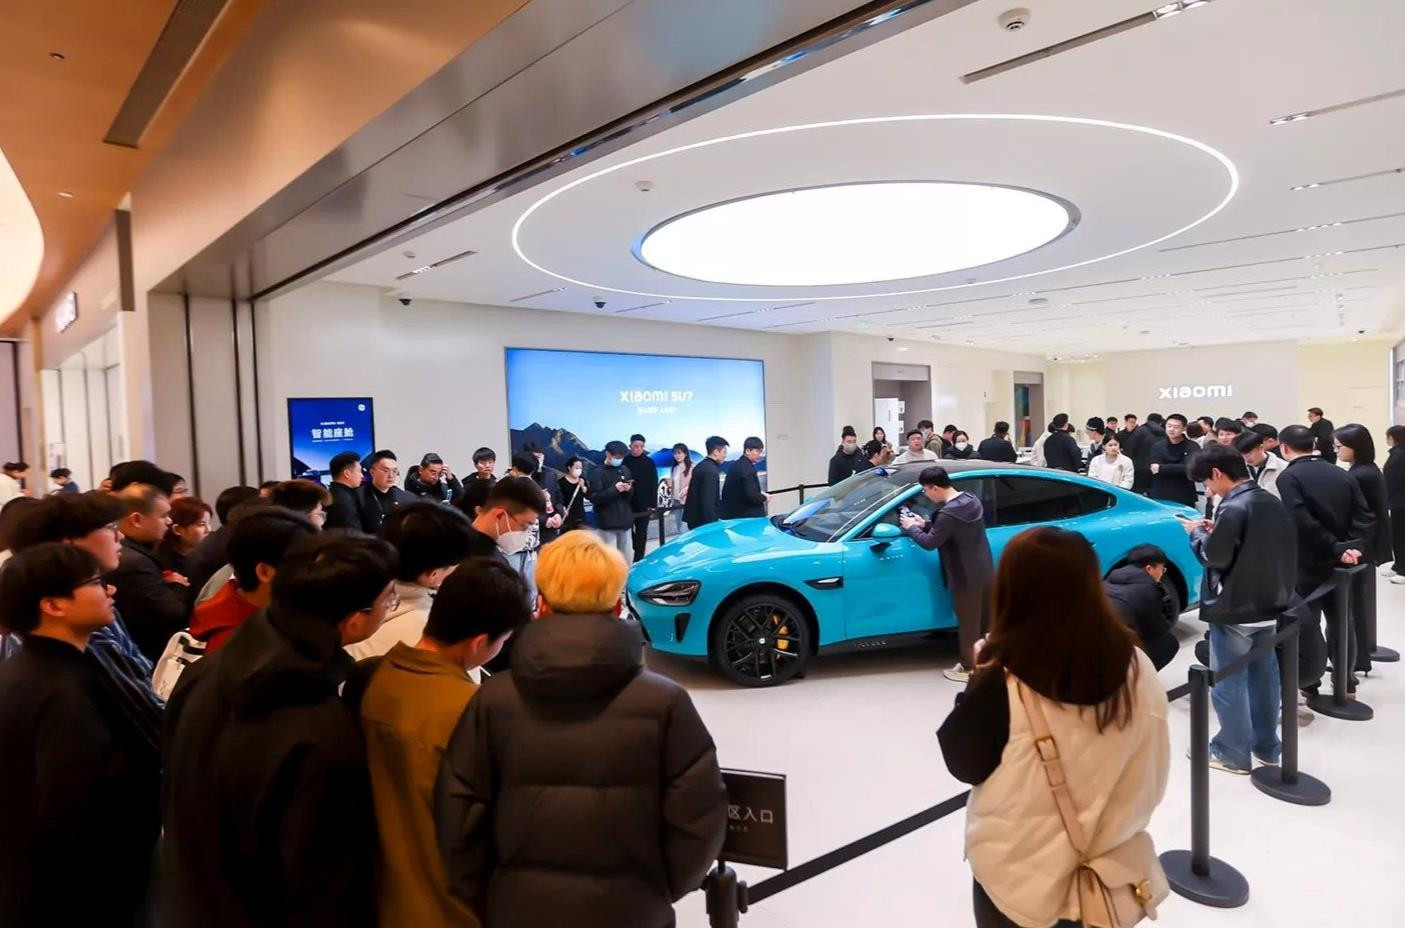 76 giây sản xuất ra một chiếc SU7, 27 phút mở bán đạt doanh số 50.000 xe - Đây là sự đáng sợ của một Xiaomi vừa 'chân ướt chân ráo' gia nhập thị trường ô tô điện- Ảnh 1.